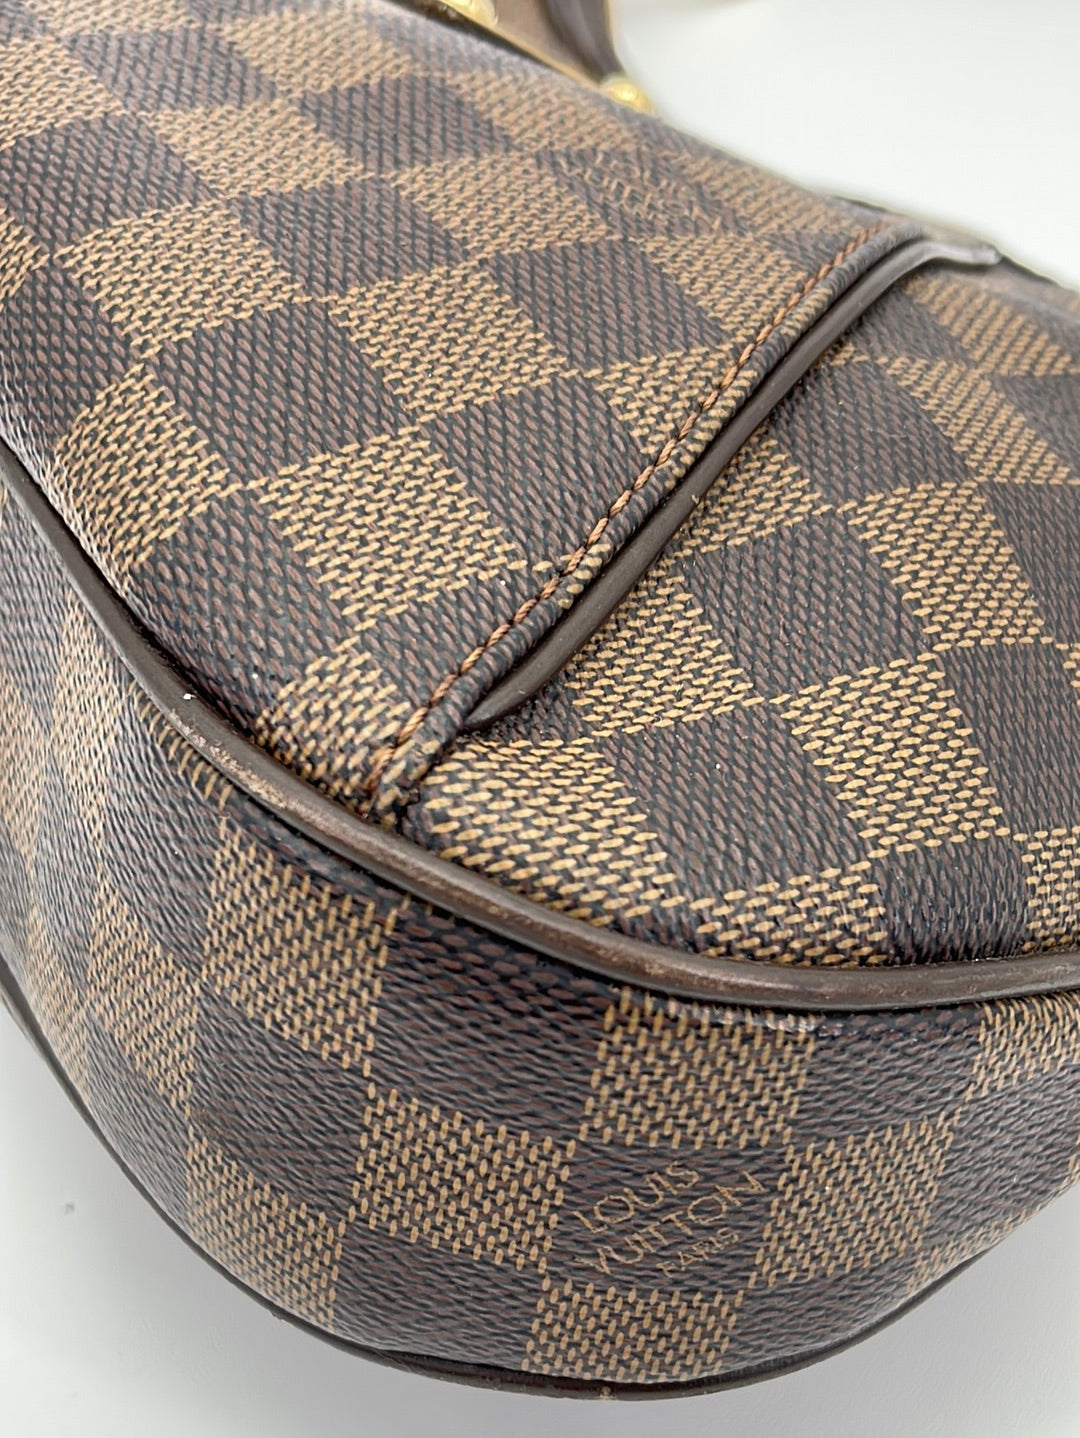 Louis Vuitton Damier Thames MM Ladies' Semi-Shoulder bag